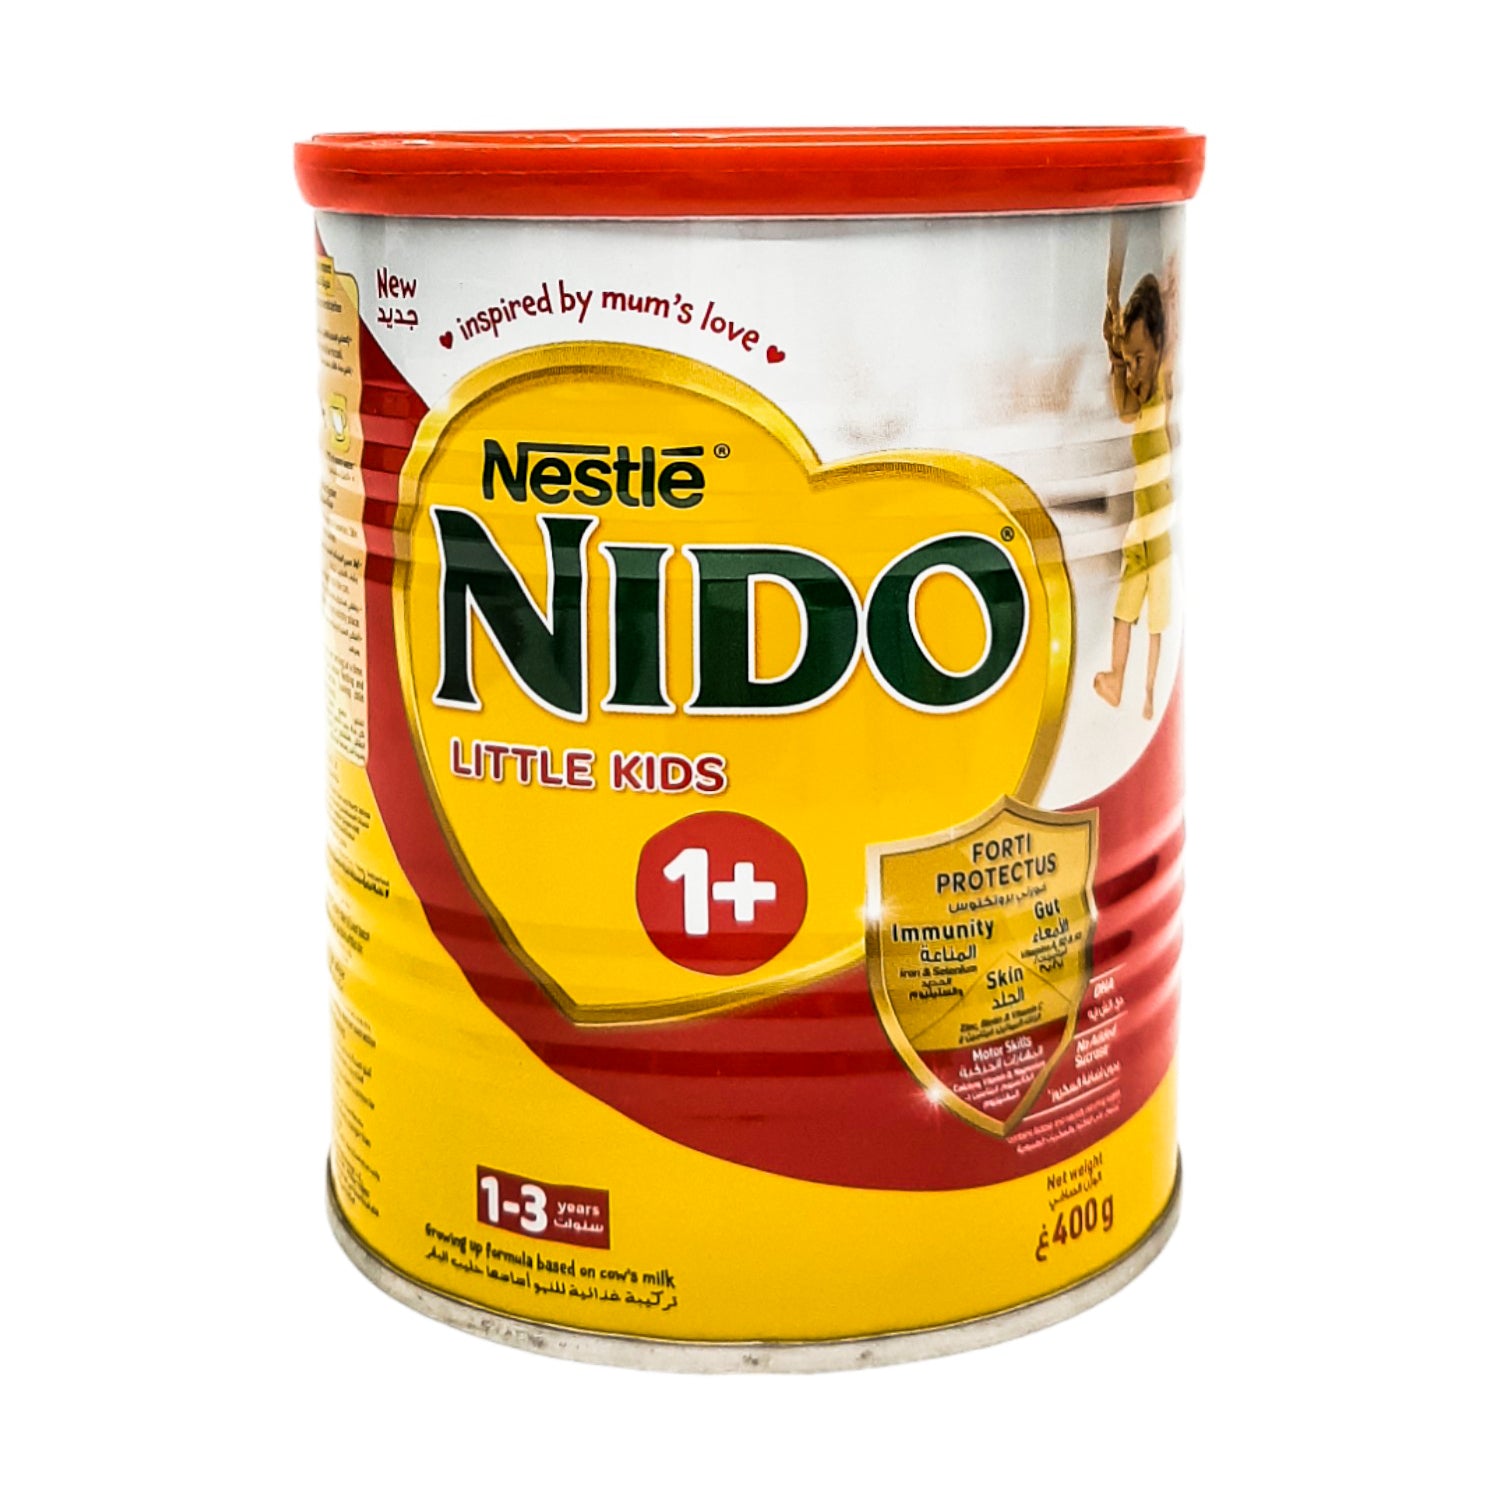 Nestle Nido Little Kids, 1+ (1-3 yrs) - 400g